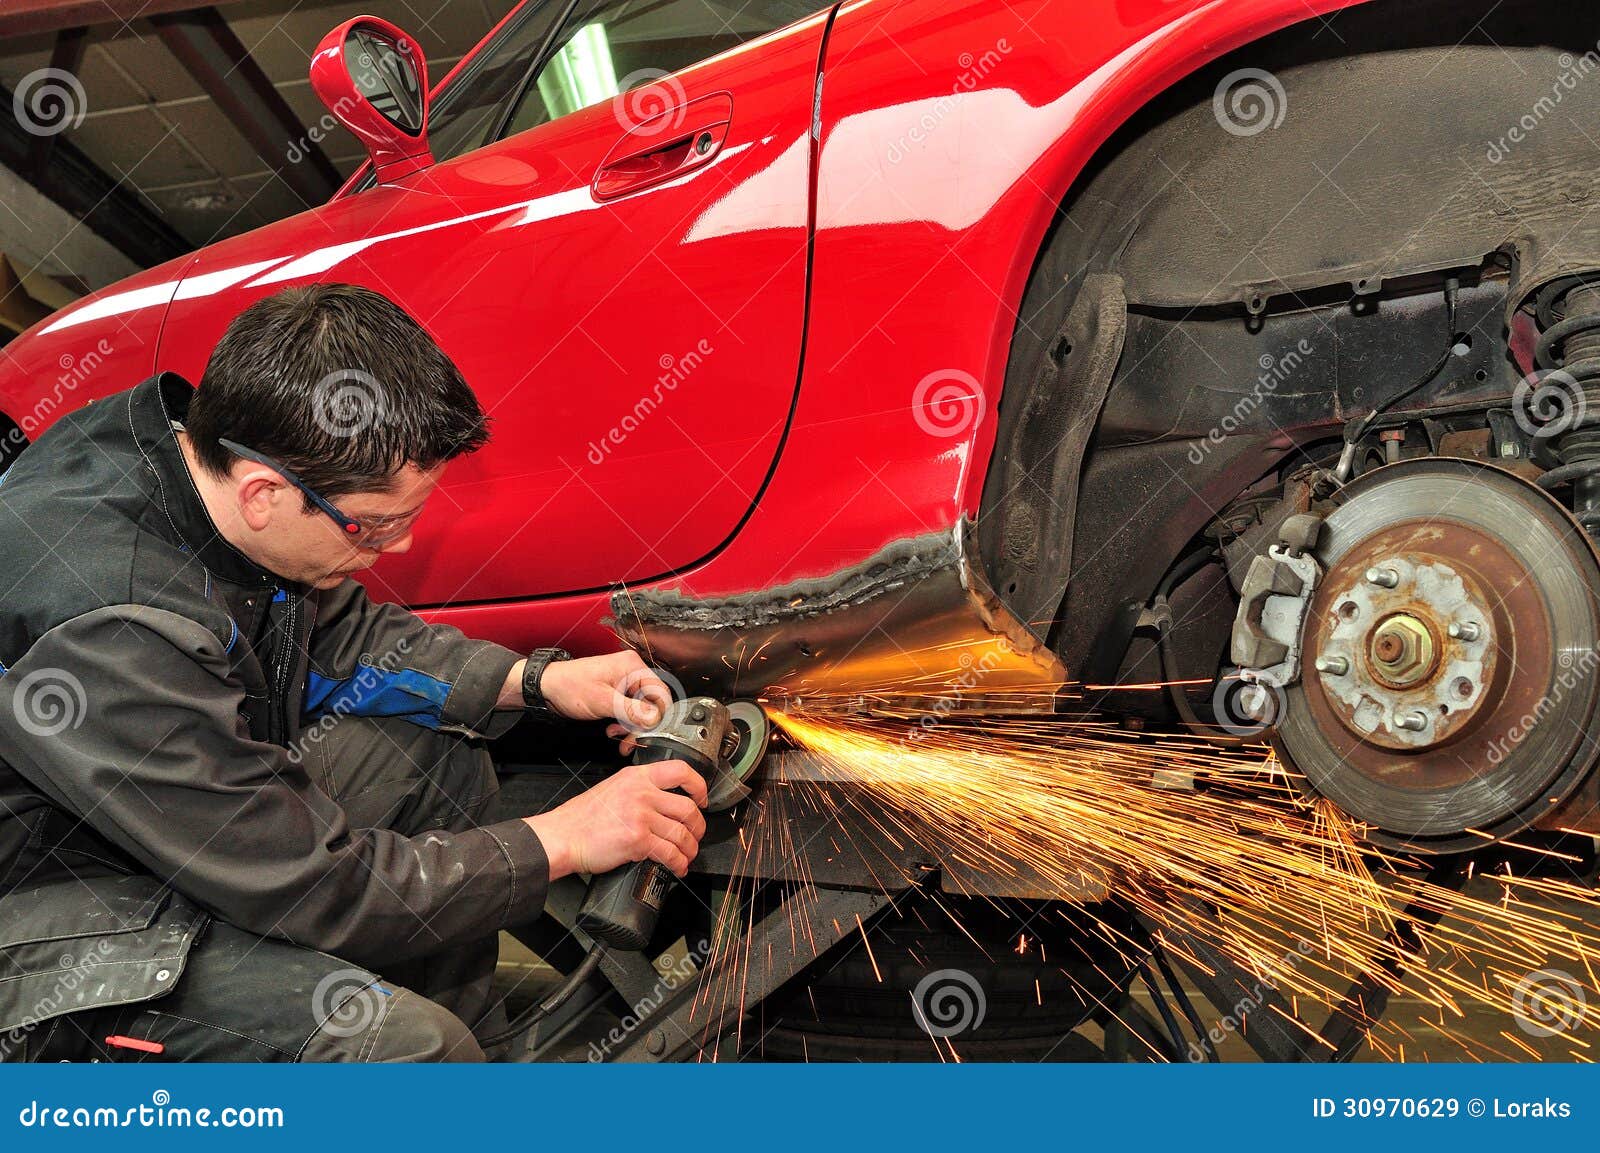 car body repair.